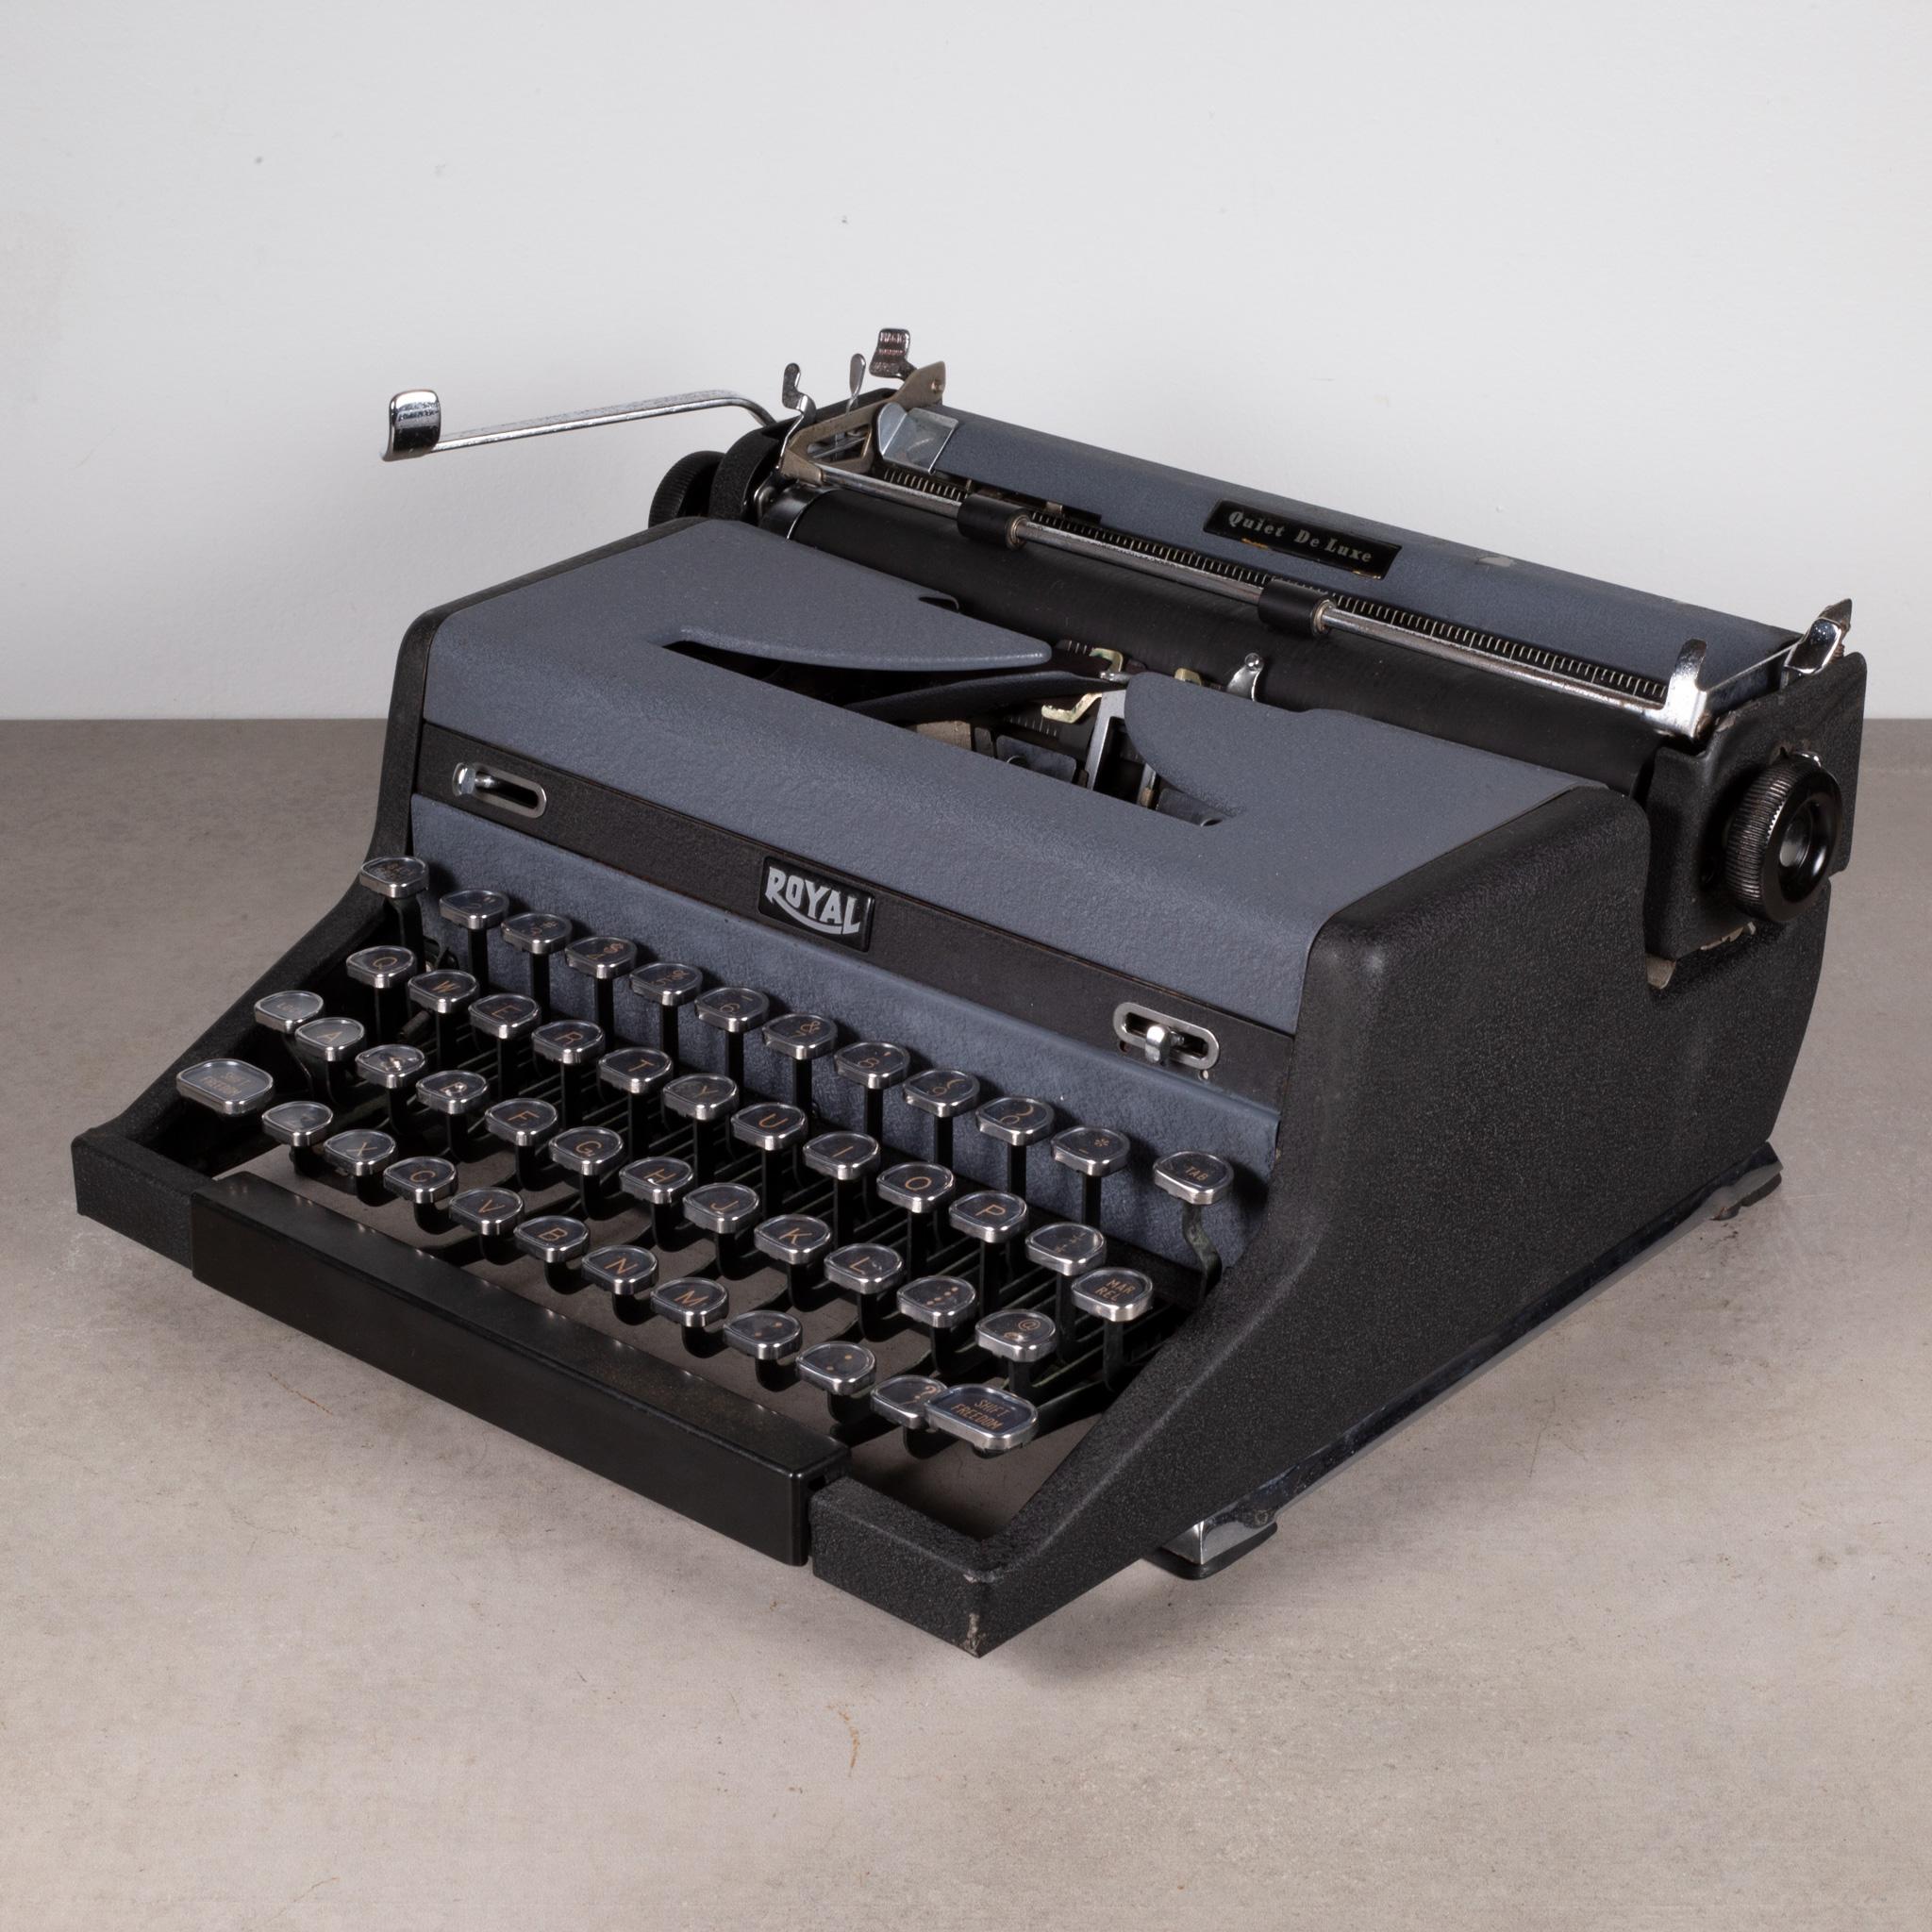 Royal Quiet DeLuxe Two Tone Typewriter und Koffer, um 1948  (KOSTENLOSER VERSAND) (Industriell)